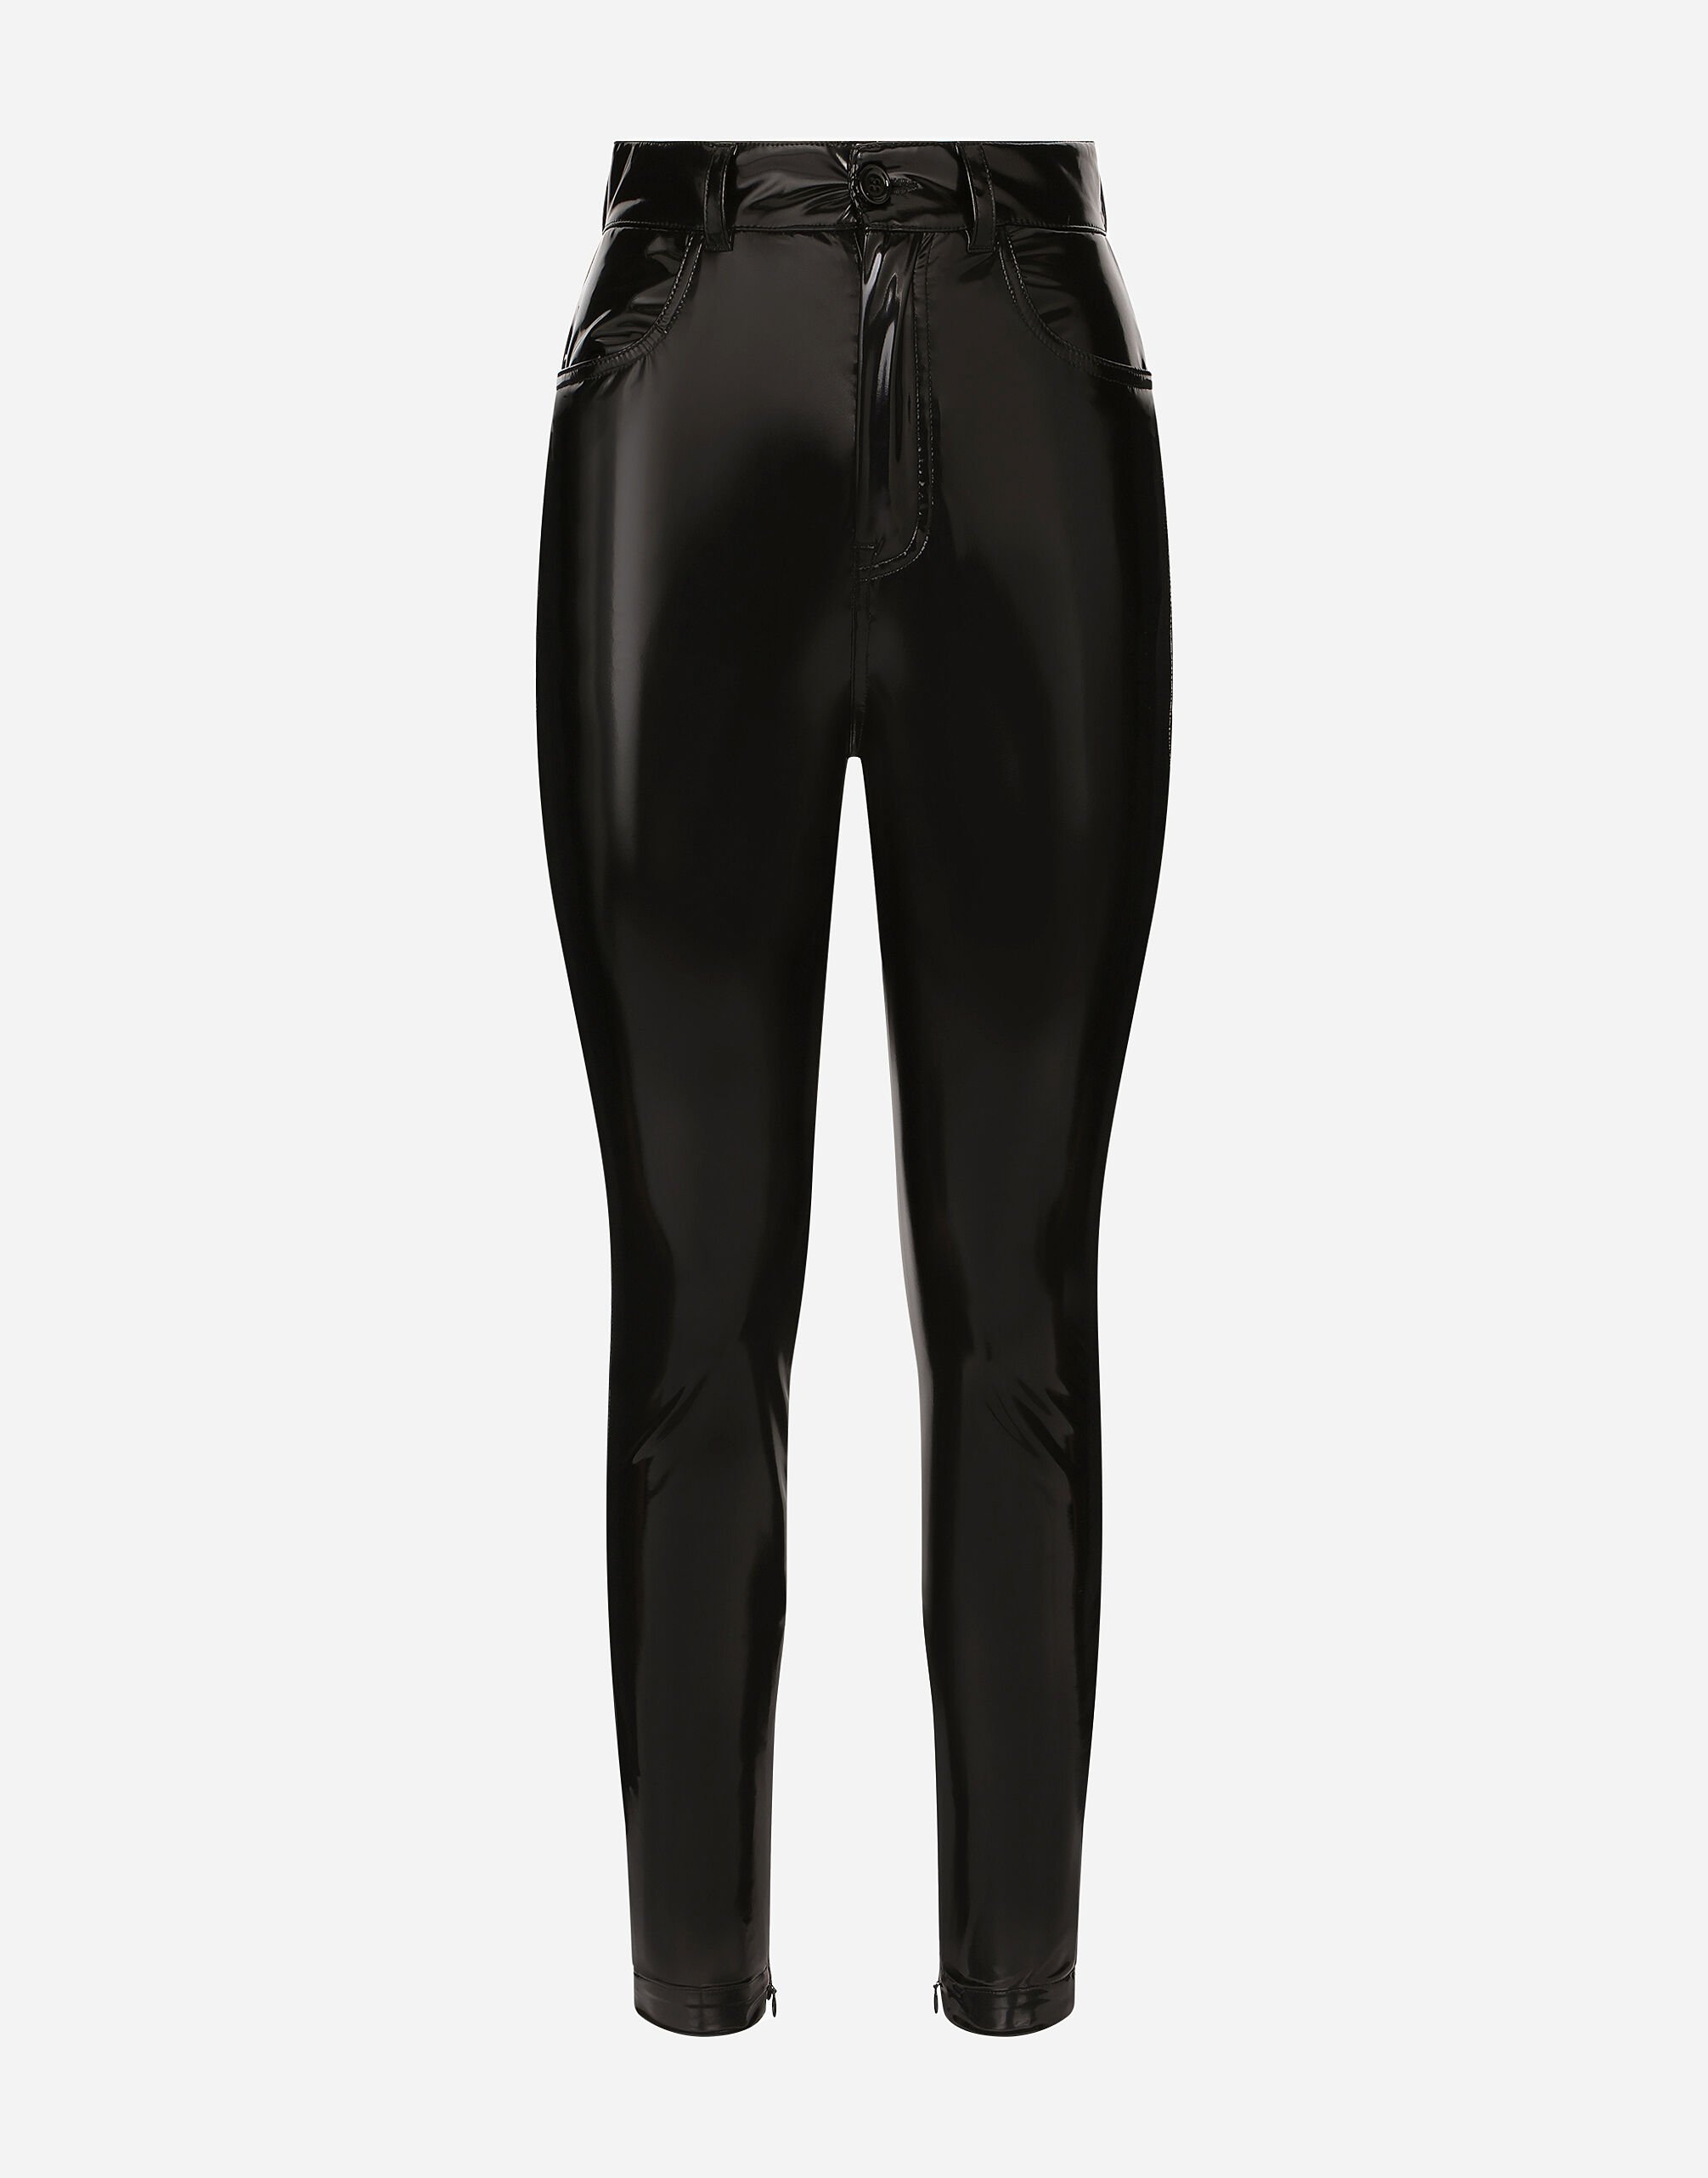 Dolce & Gabbana Pantalón de talle alto en punto revestido Negro F9M87LGDBVO